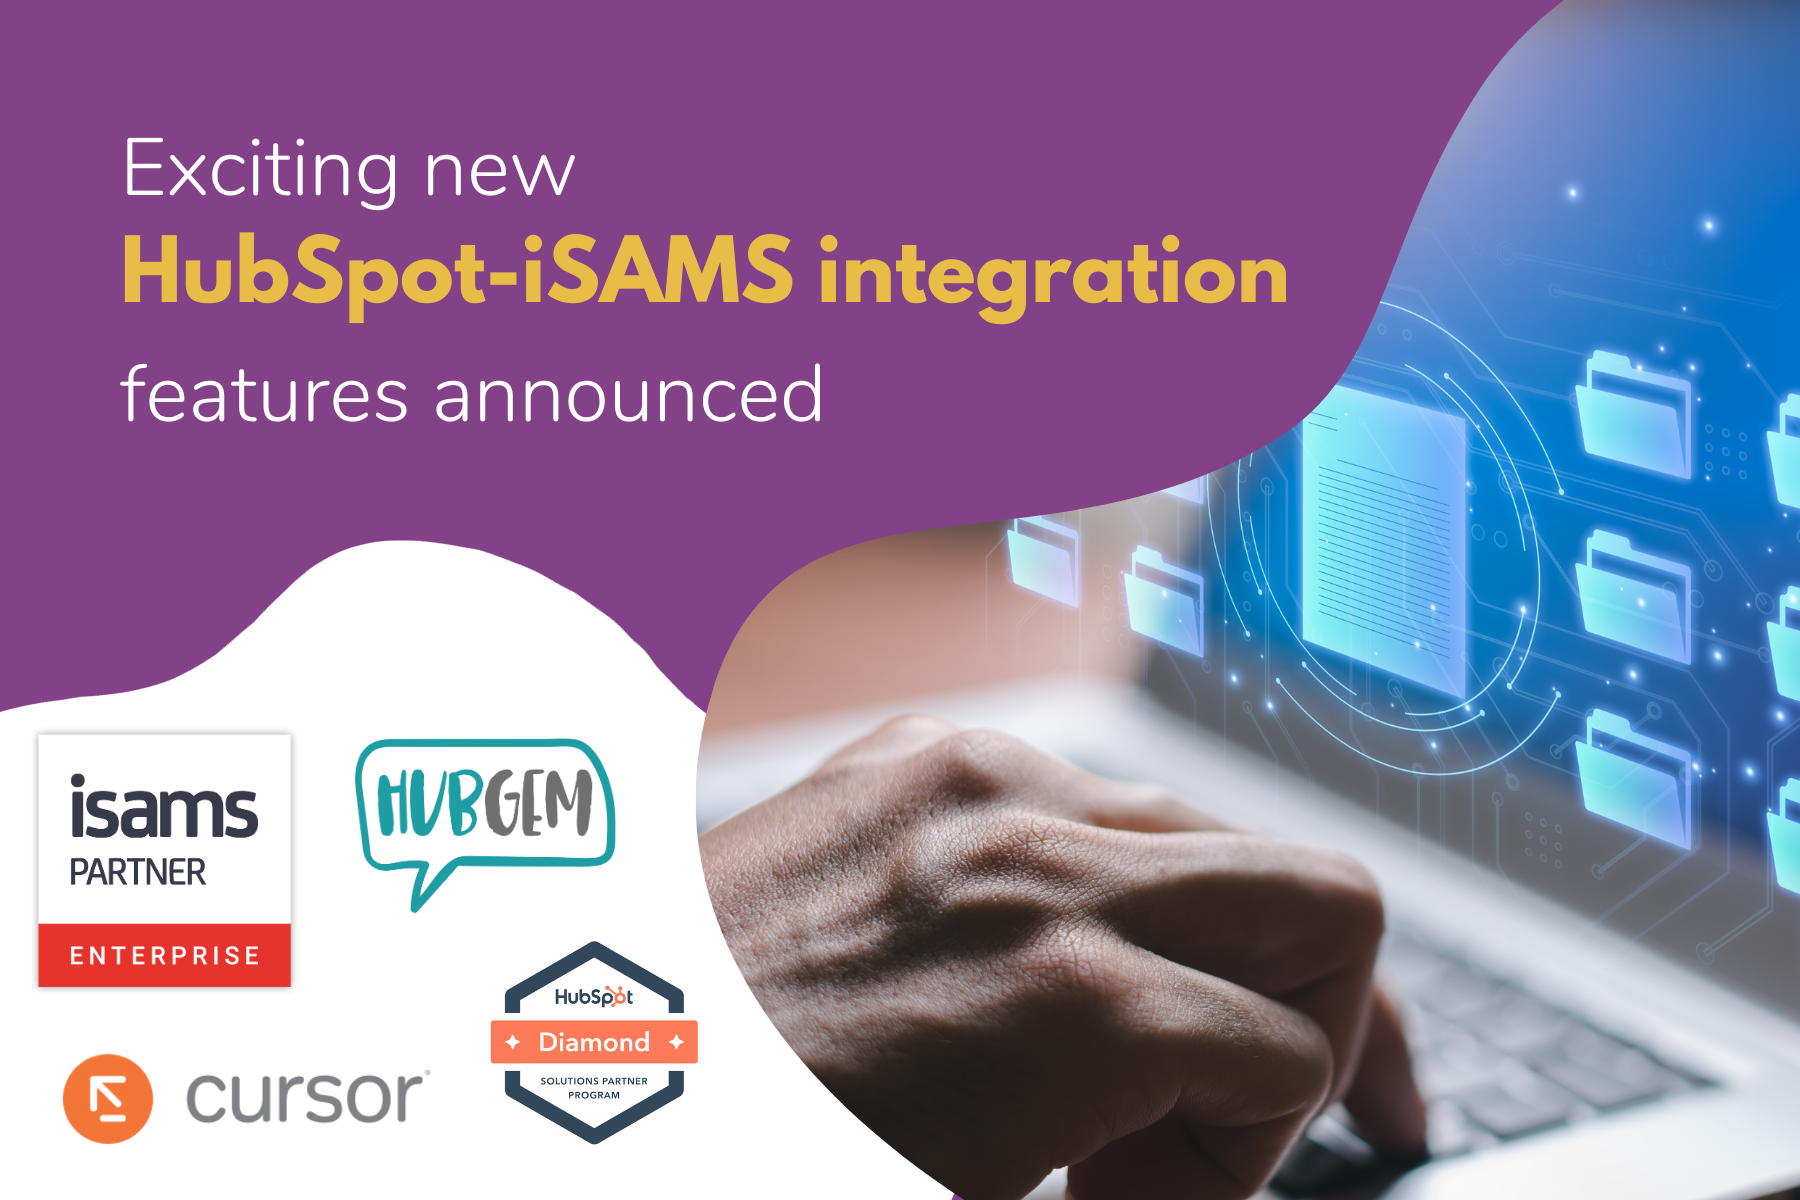 HubSpot iSAMS integration